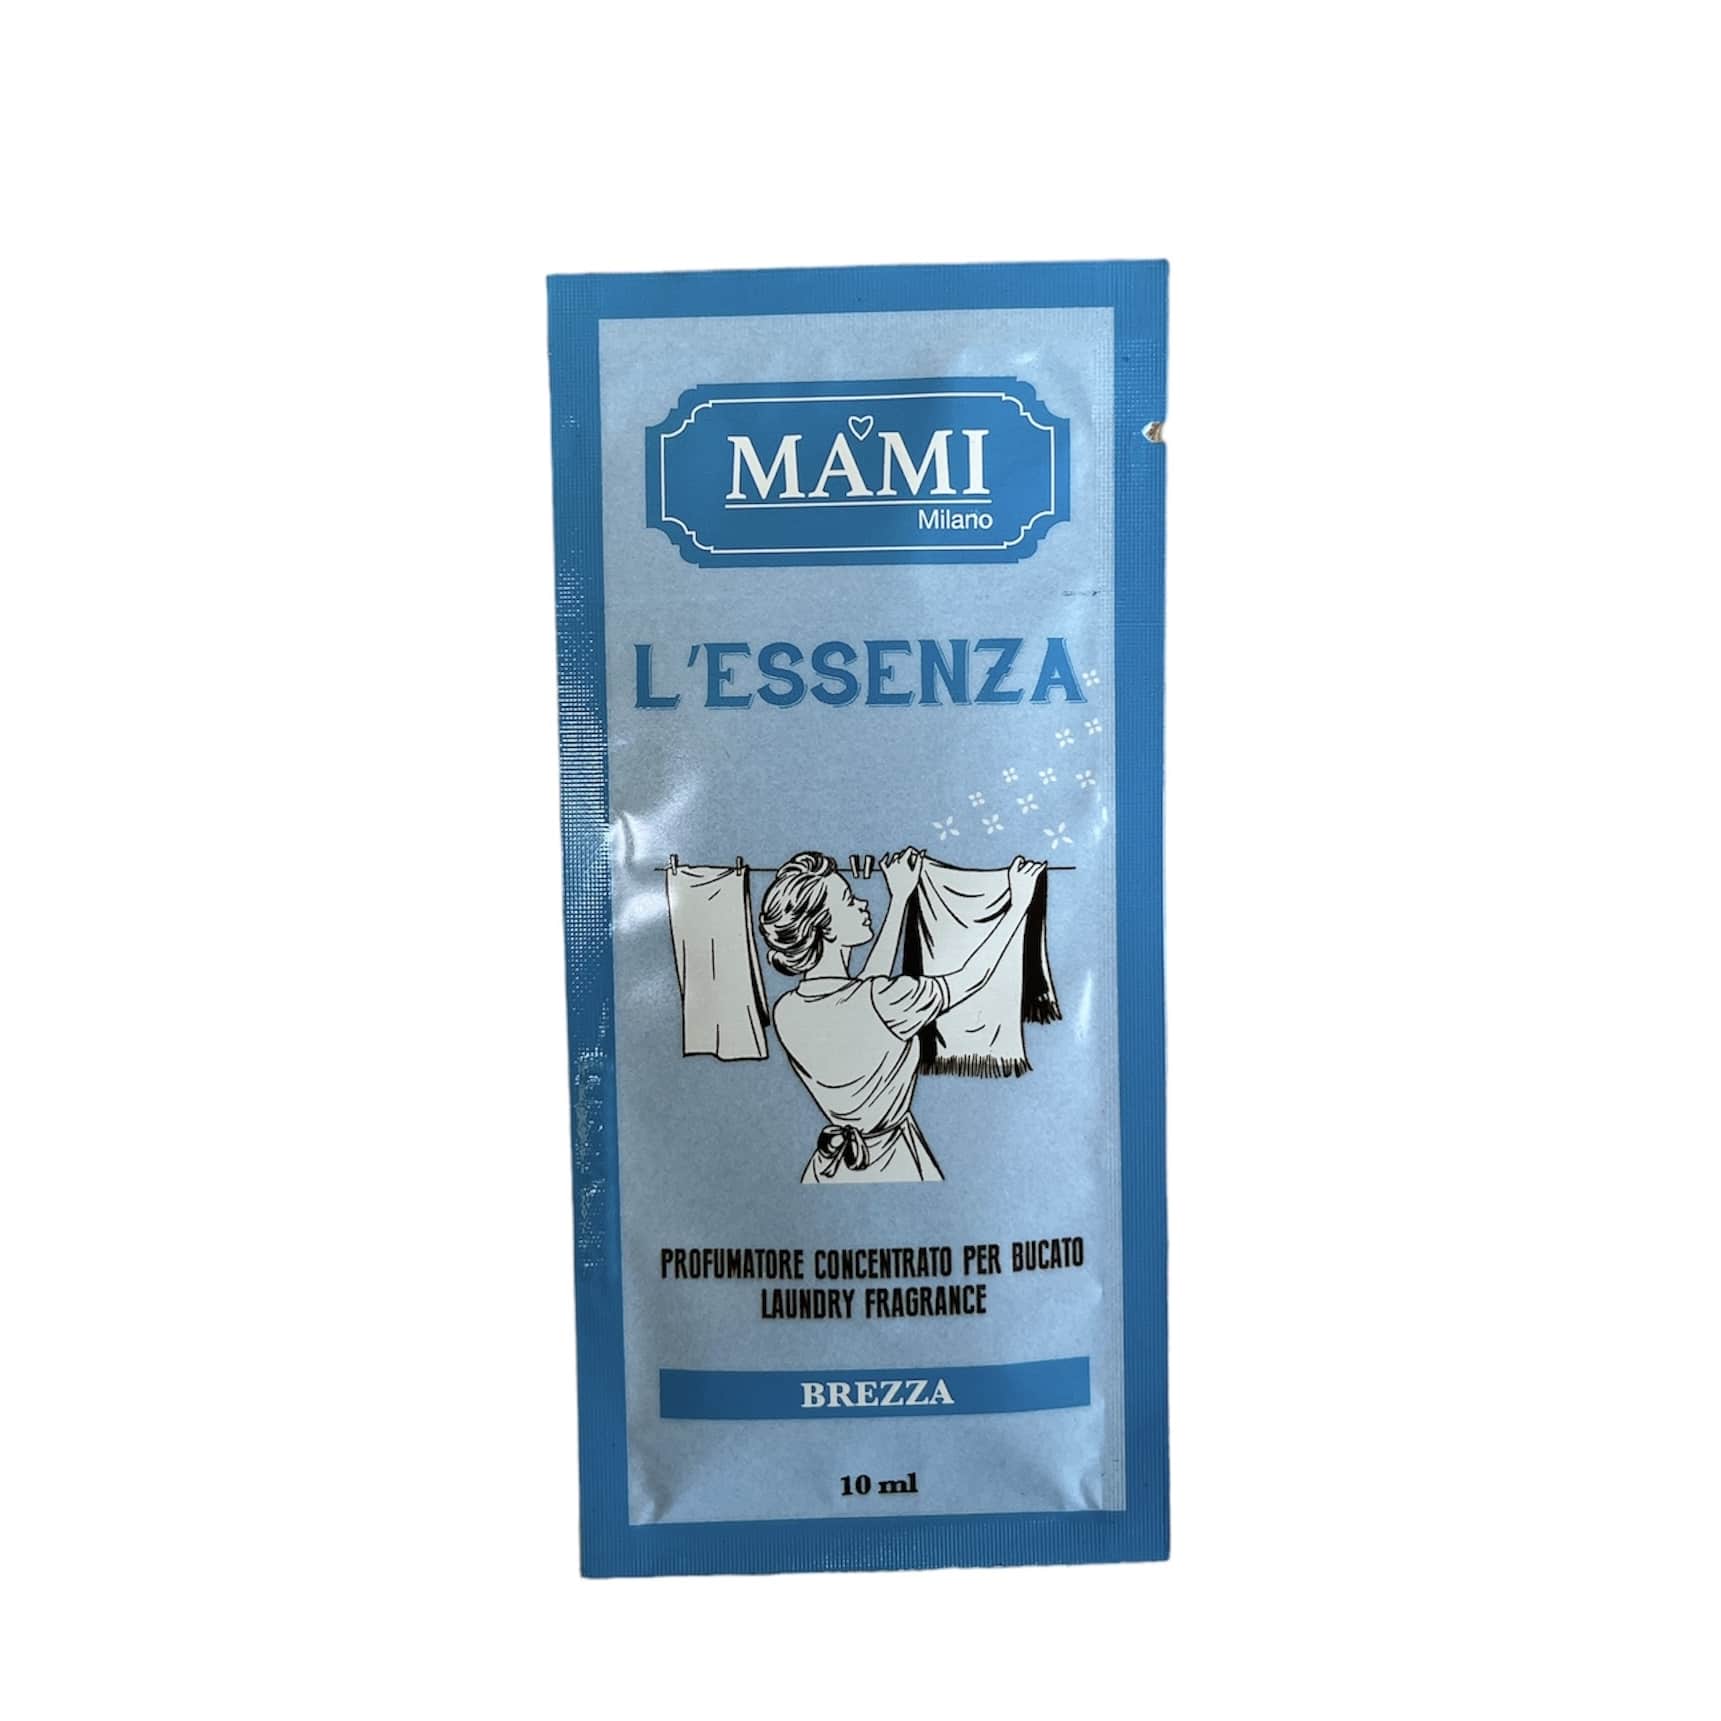 Mami Milano L'Essenza monodose 10 ml profumatore concentrato per il bucato  - Paggi Casalinghi